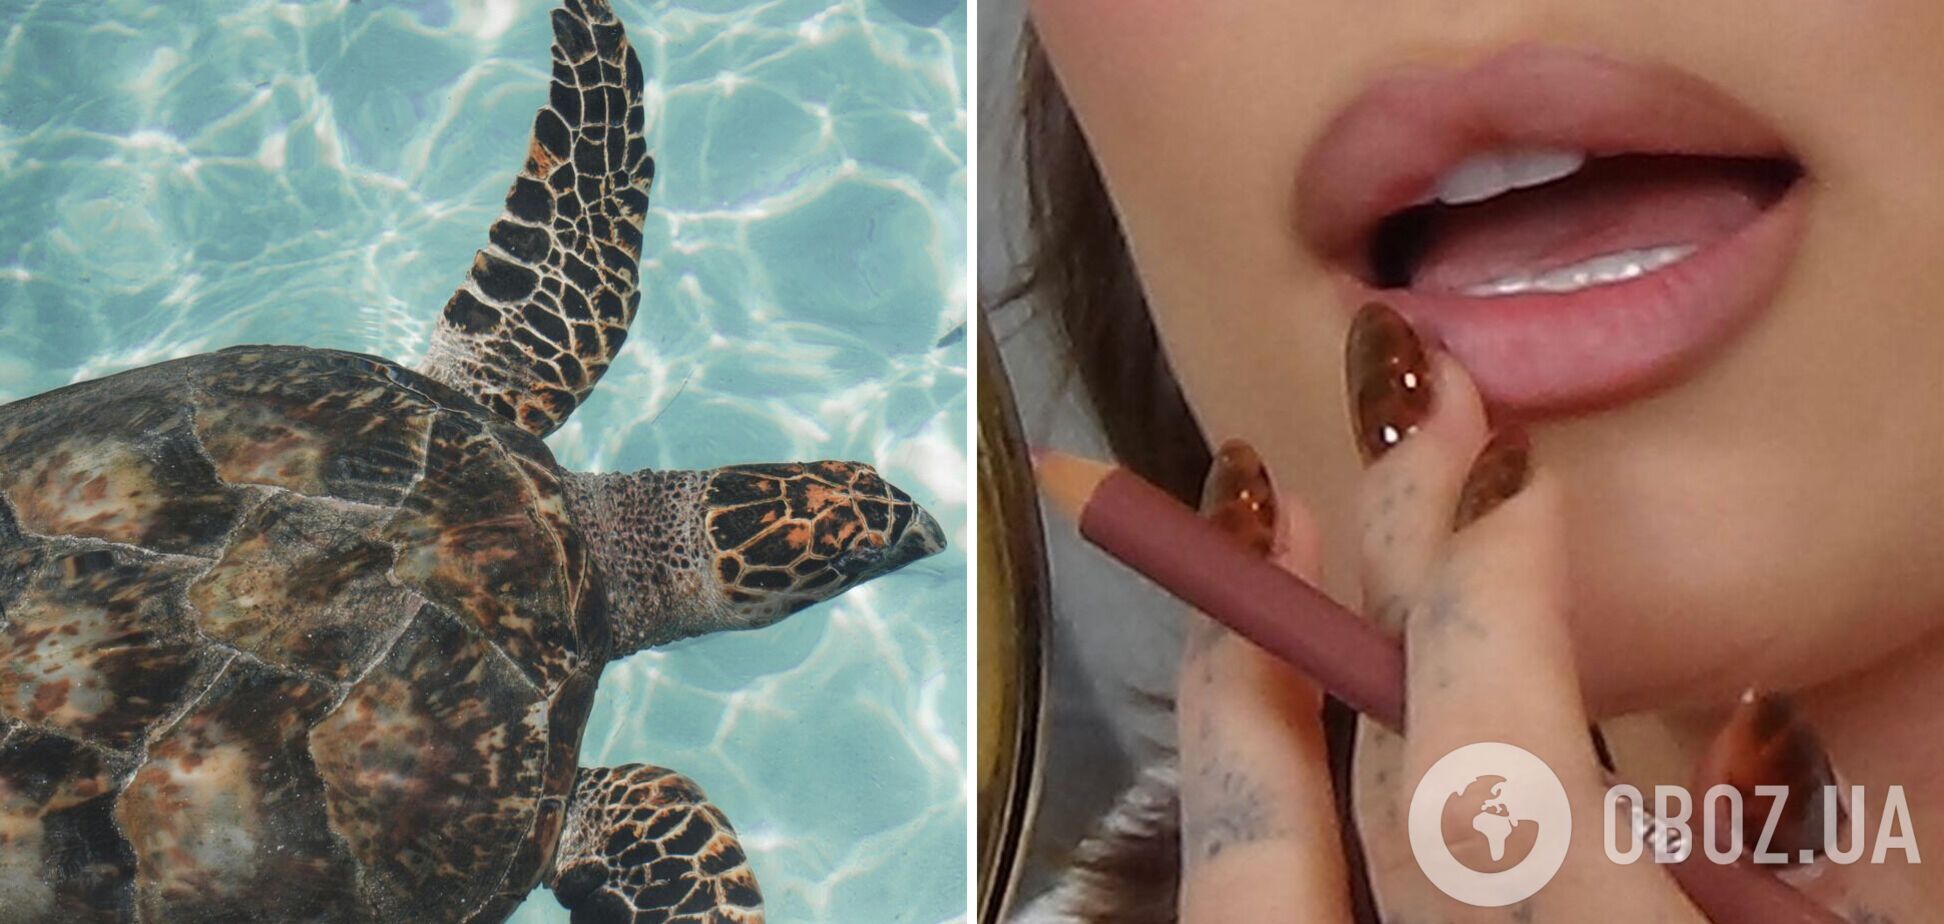 Черепахові нігті знову повертаються в моду: 5 дизайнів манікюру, які сподобаються всім